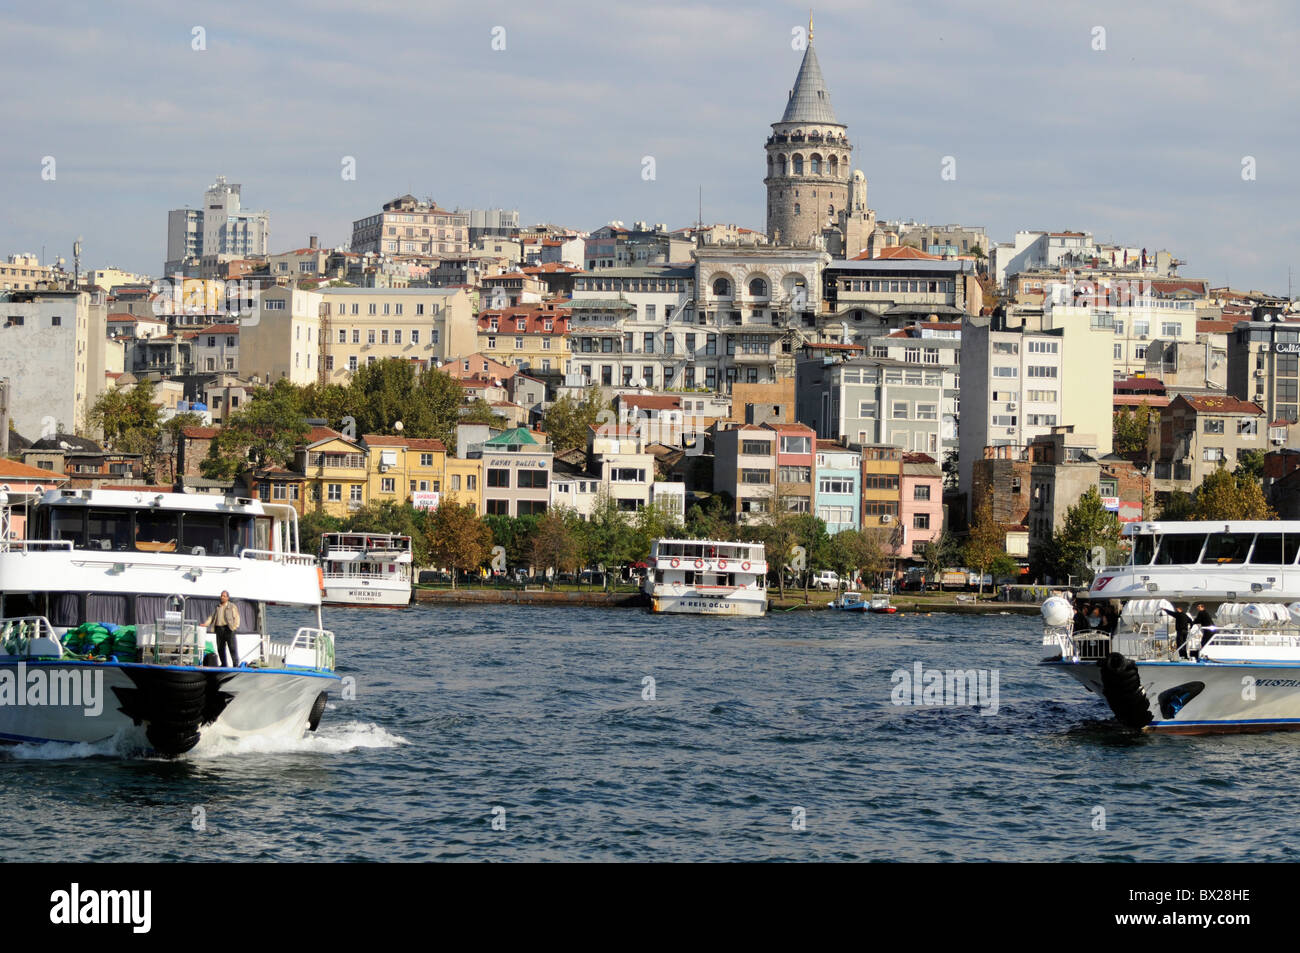 Turyol Sightseeing-Kreuzfahrt Touristenbooten das Goldene Horn, Istanbul, Türkei. Galata-Turm im Hintergrund Stockfoto